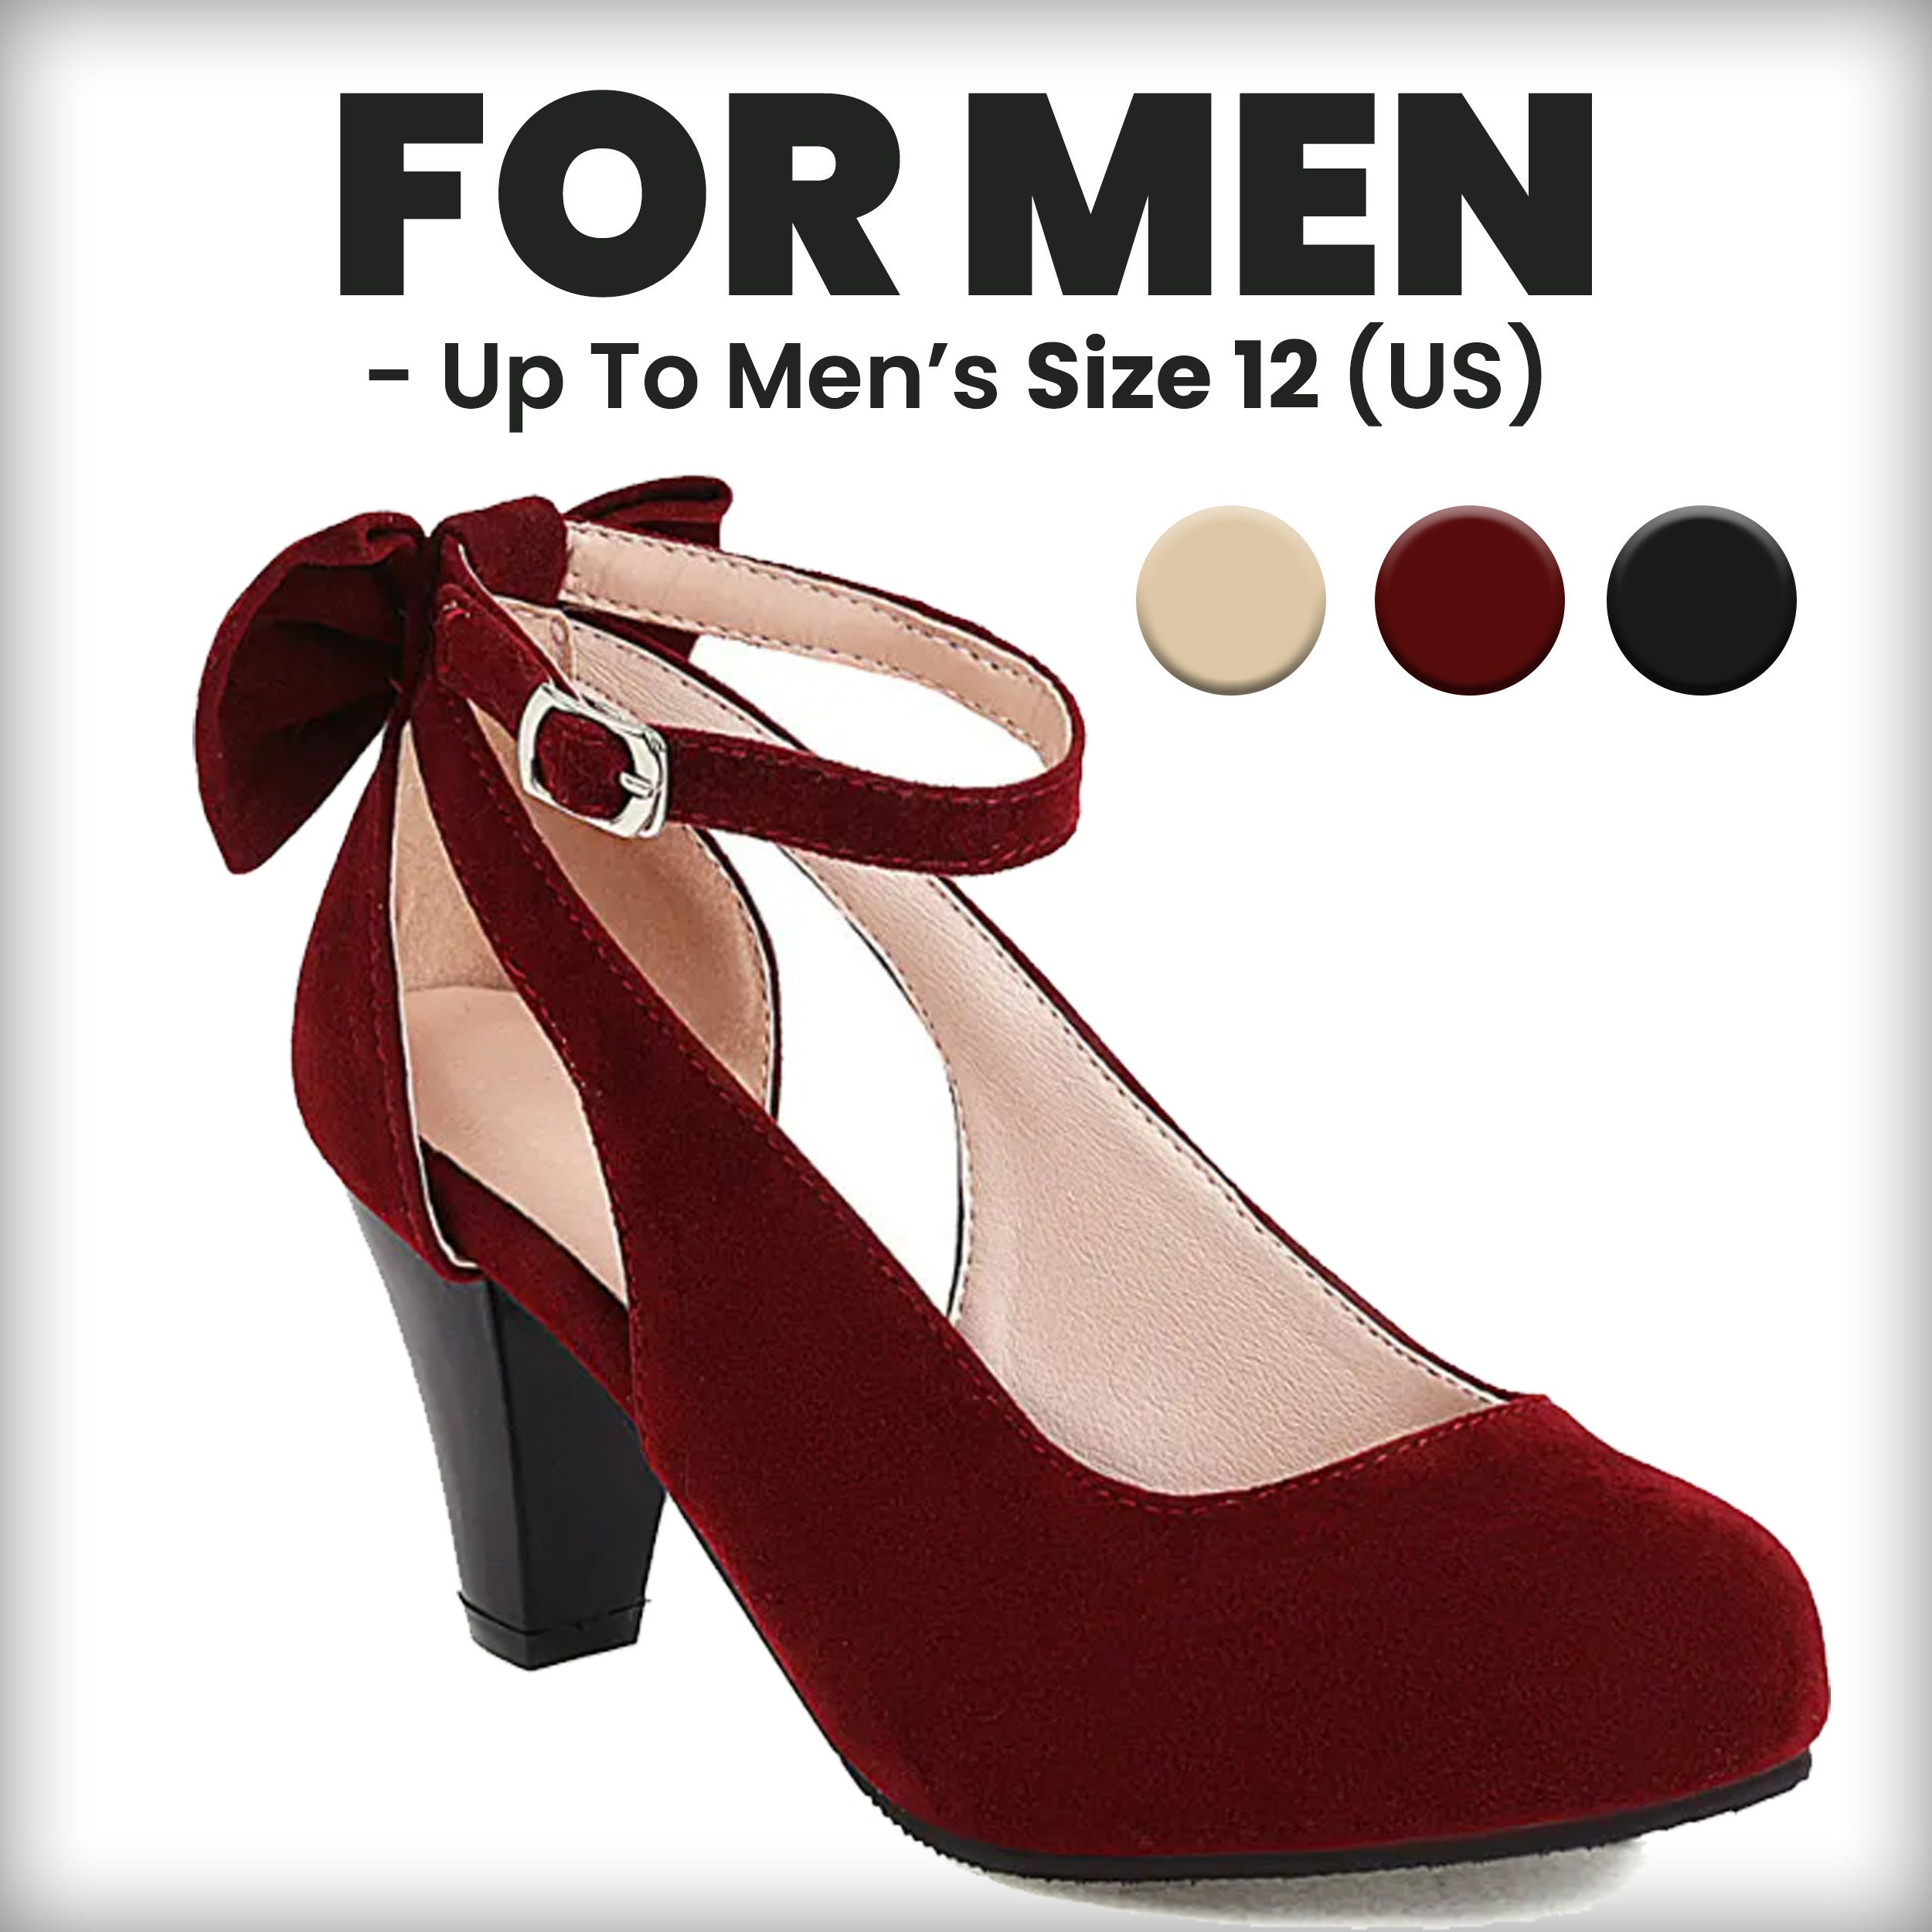 Red High Heels Men Stock Photo - Download Image Now - High Heels, Men, Red  - iStock